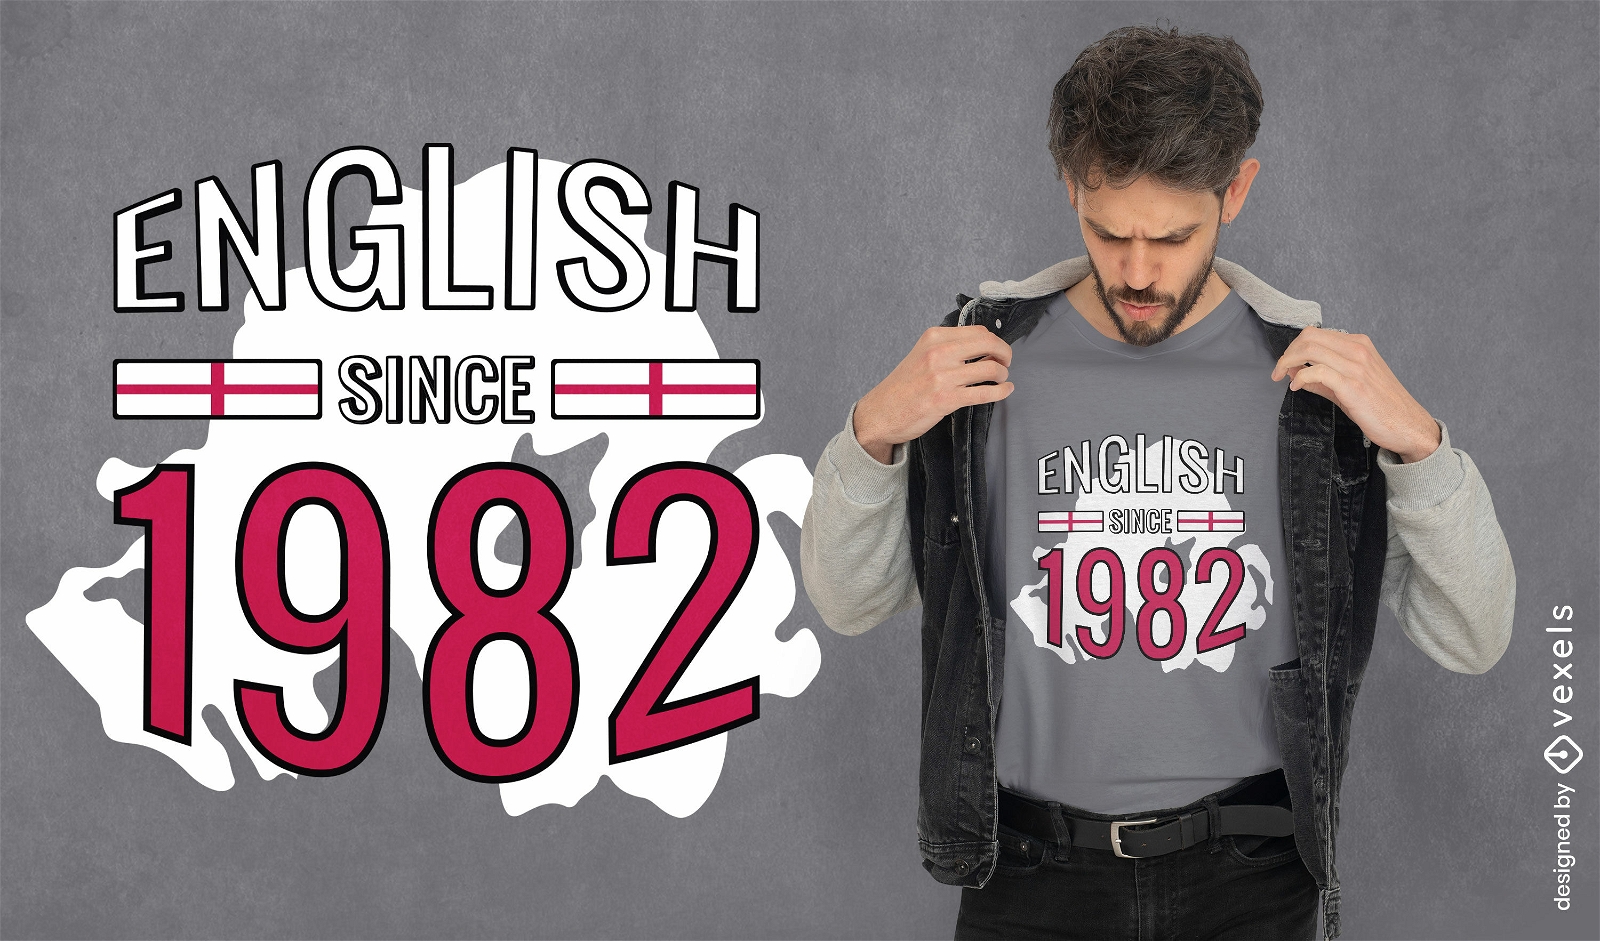 Englisch seit 1982 Zitat T-Shirt Design